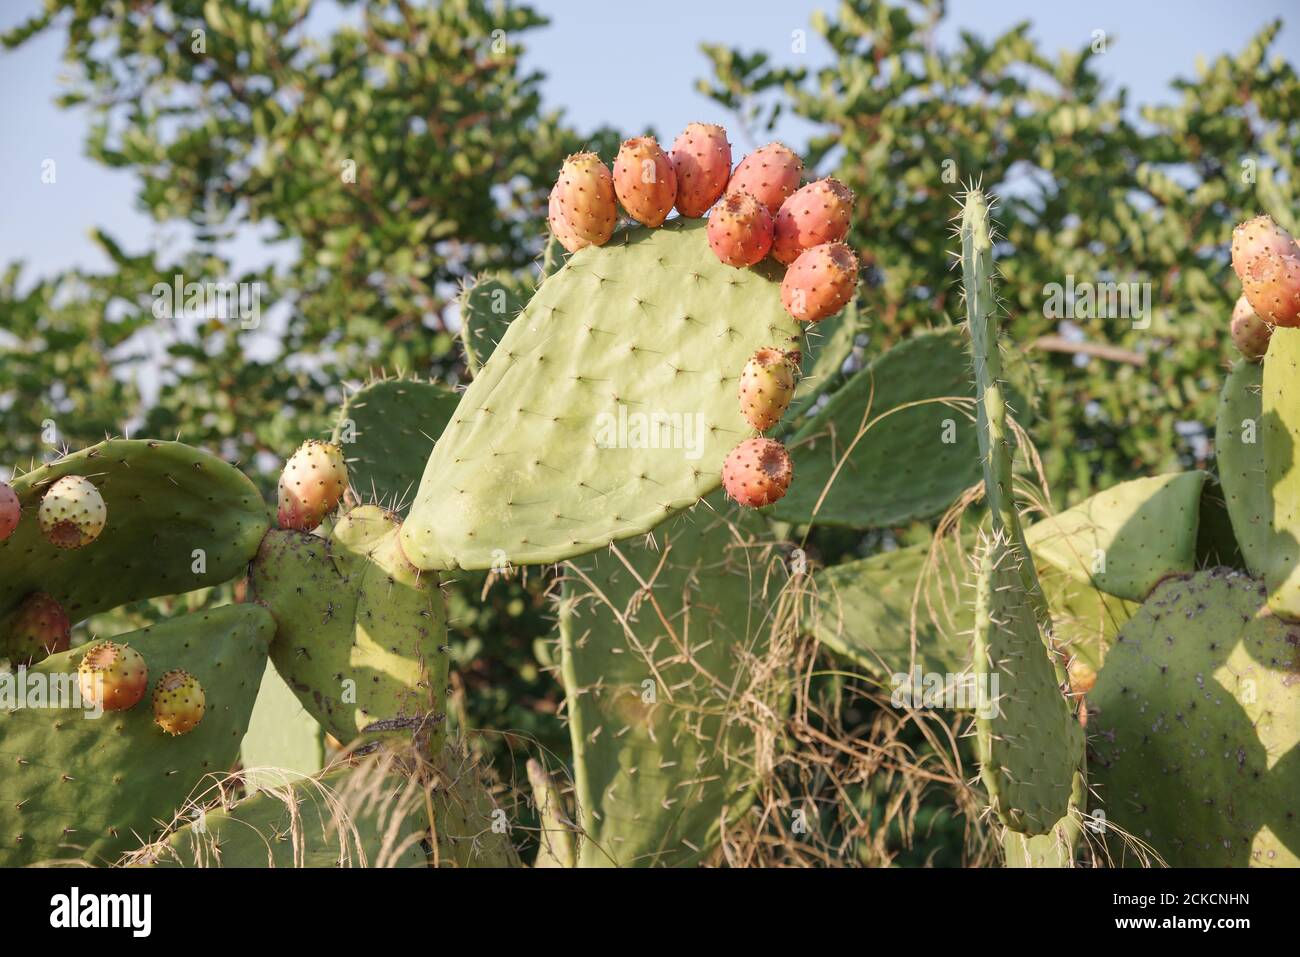 Poires siciliennes à la pousse sauvage (opuntia ficus indica) et aux fruits (région de Noto, Sicile, Italie) Banque D'Images